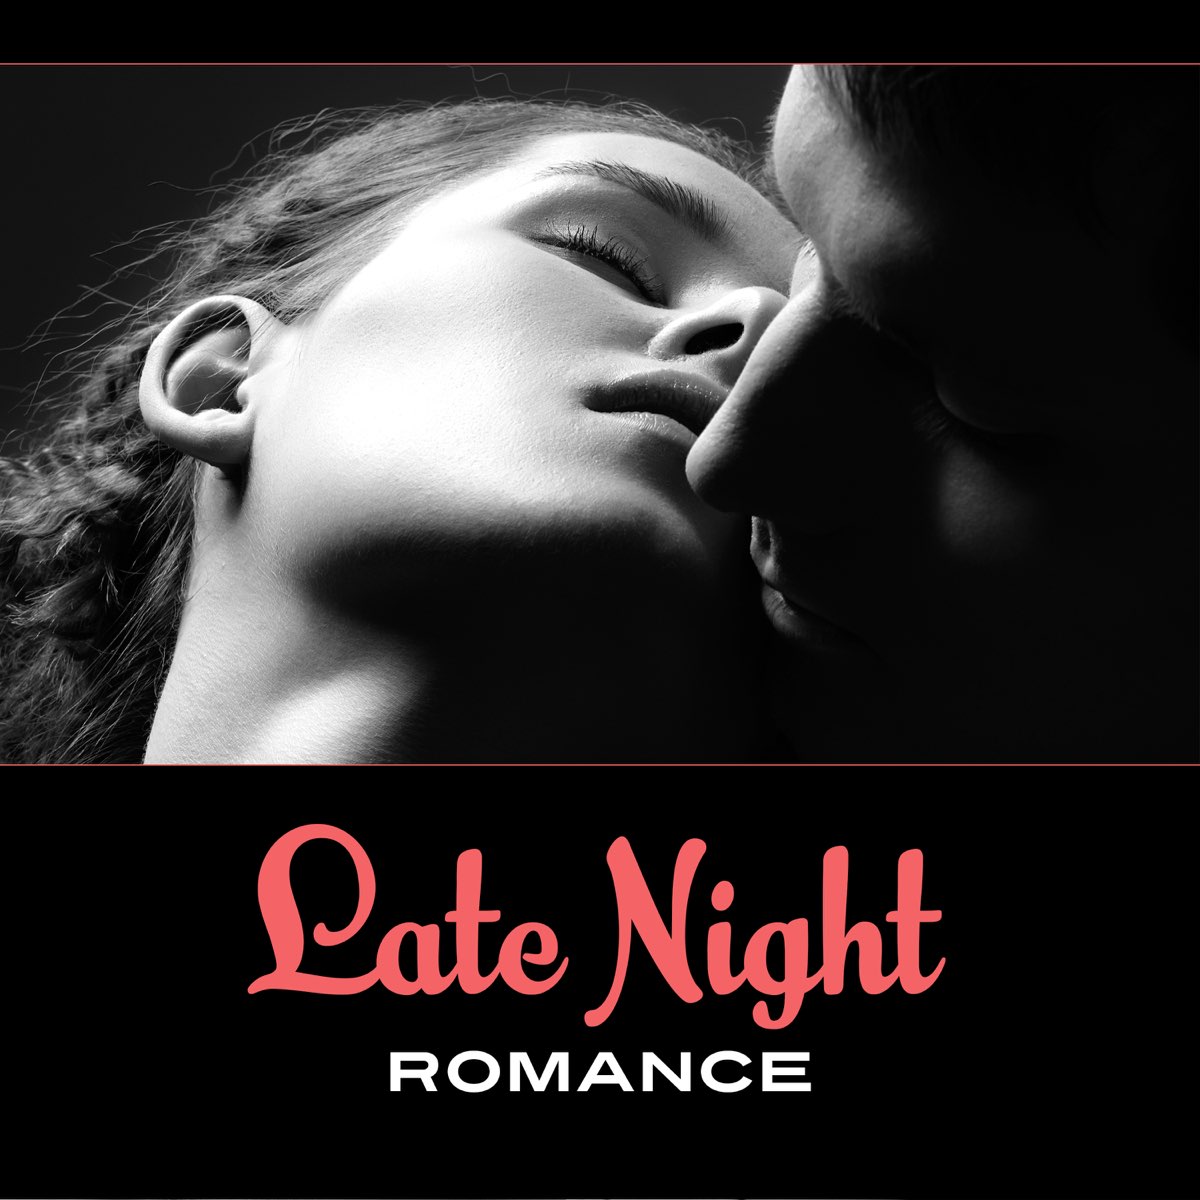 Romance music. Night Romance. Romantic Music.